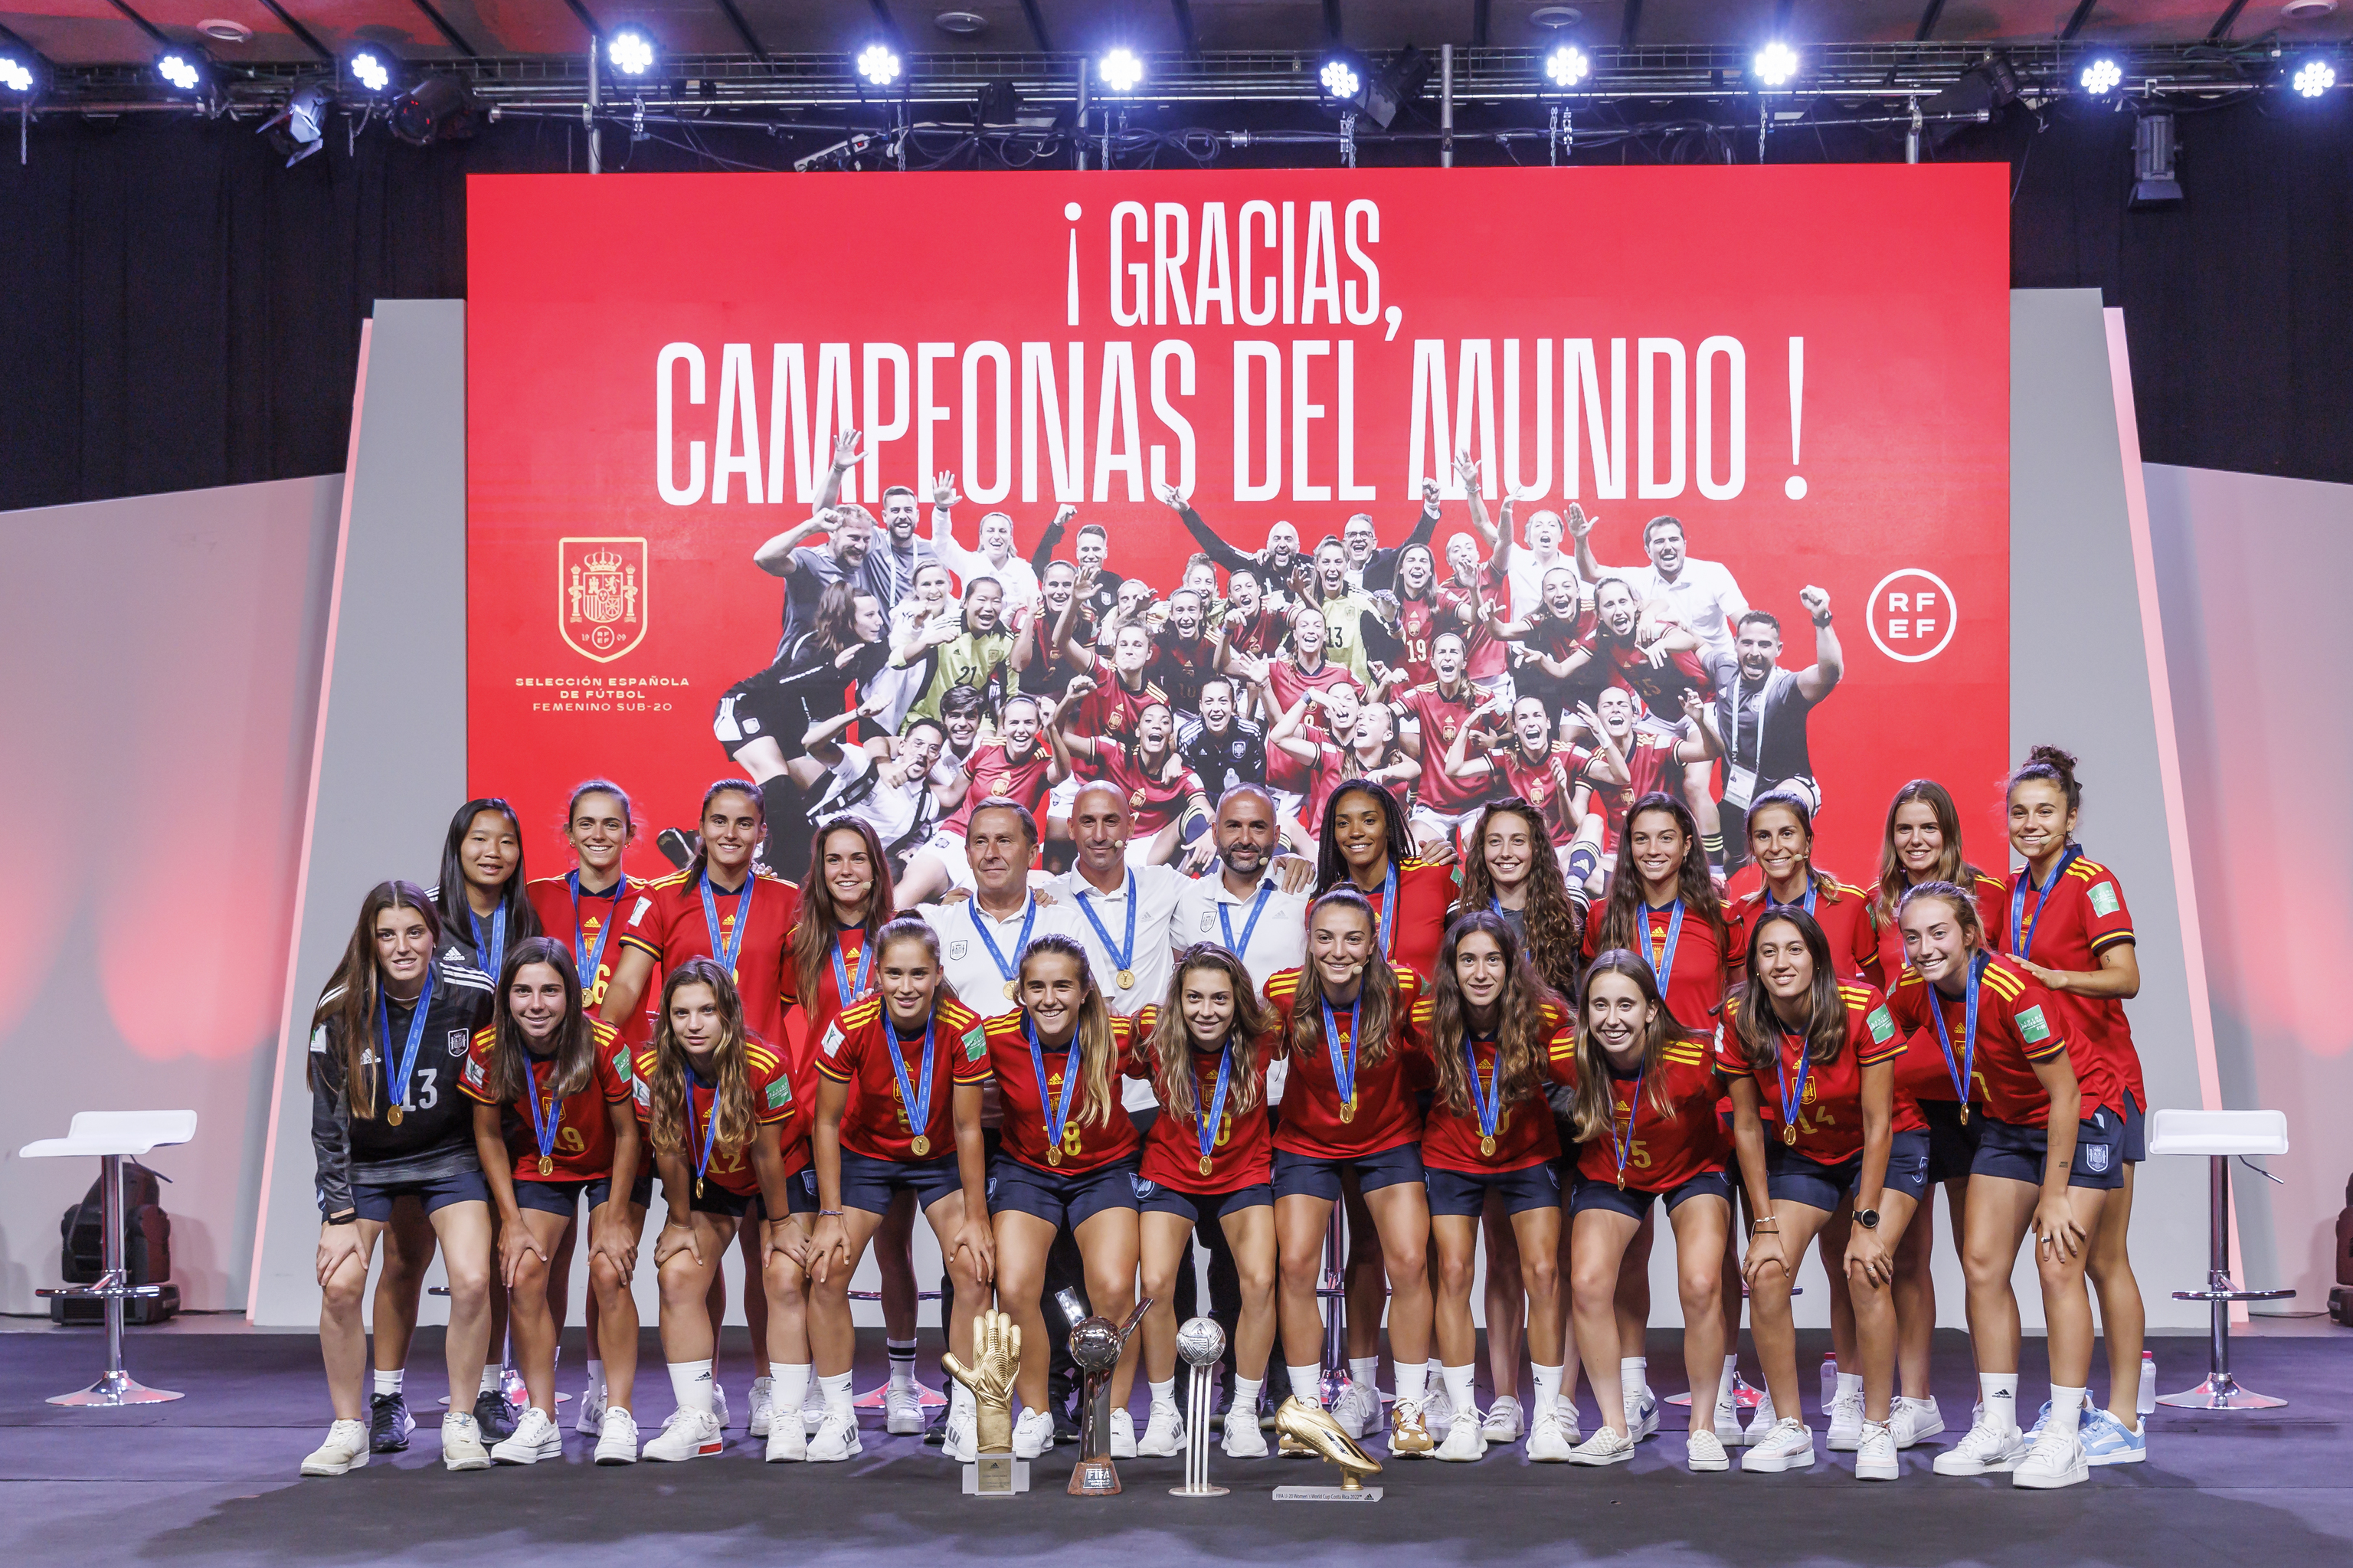 escarabajo asentamiento Chillido Mundial 2022 Qatar: La fiesta de las chicas de la selección española  sub'20: "Esta sensación es inexplicable" | Mundial 2022